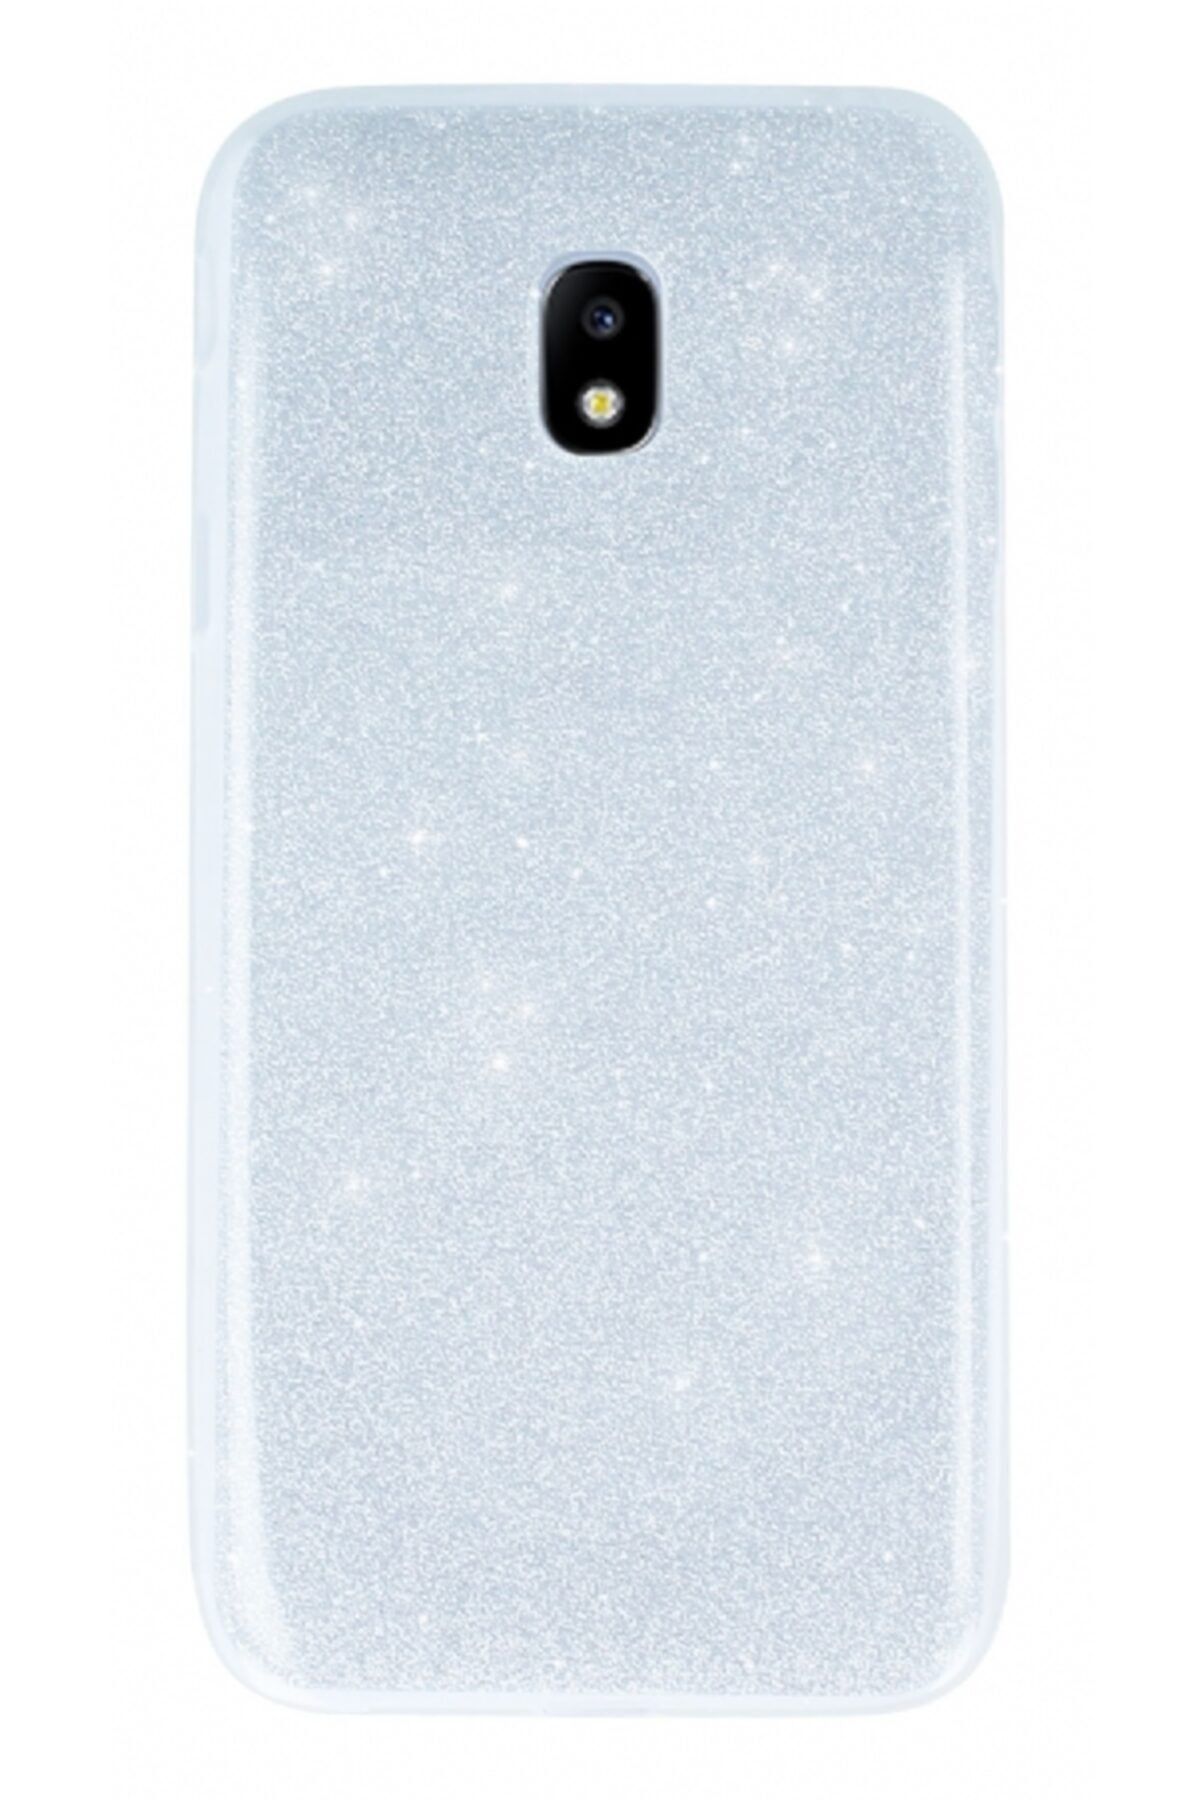 Mobilcadde Samsung Galaxy J3 Pro 2017 Simli Silver Silikon Kılıf